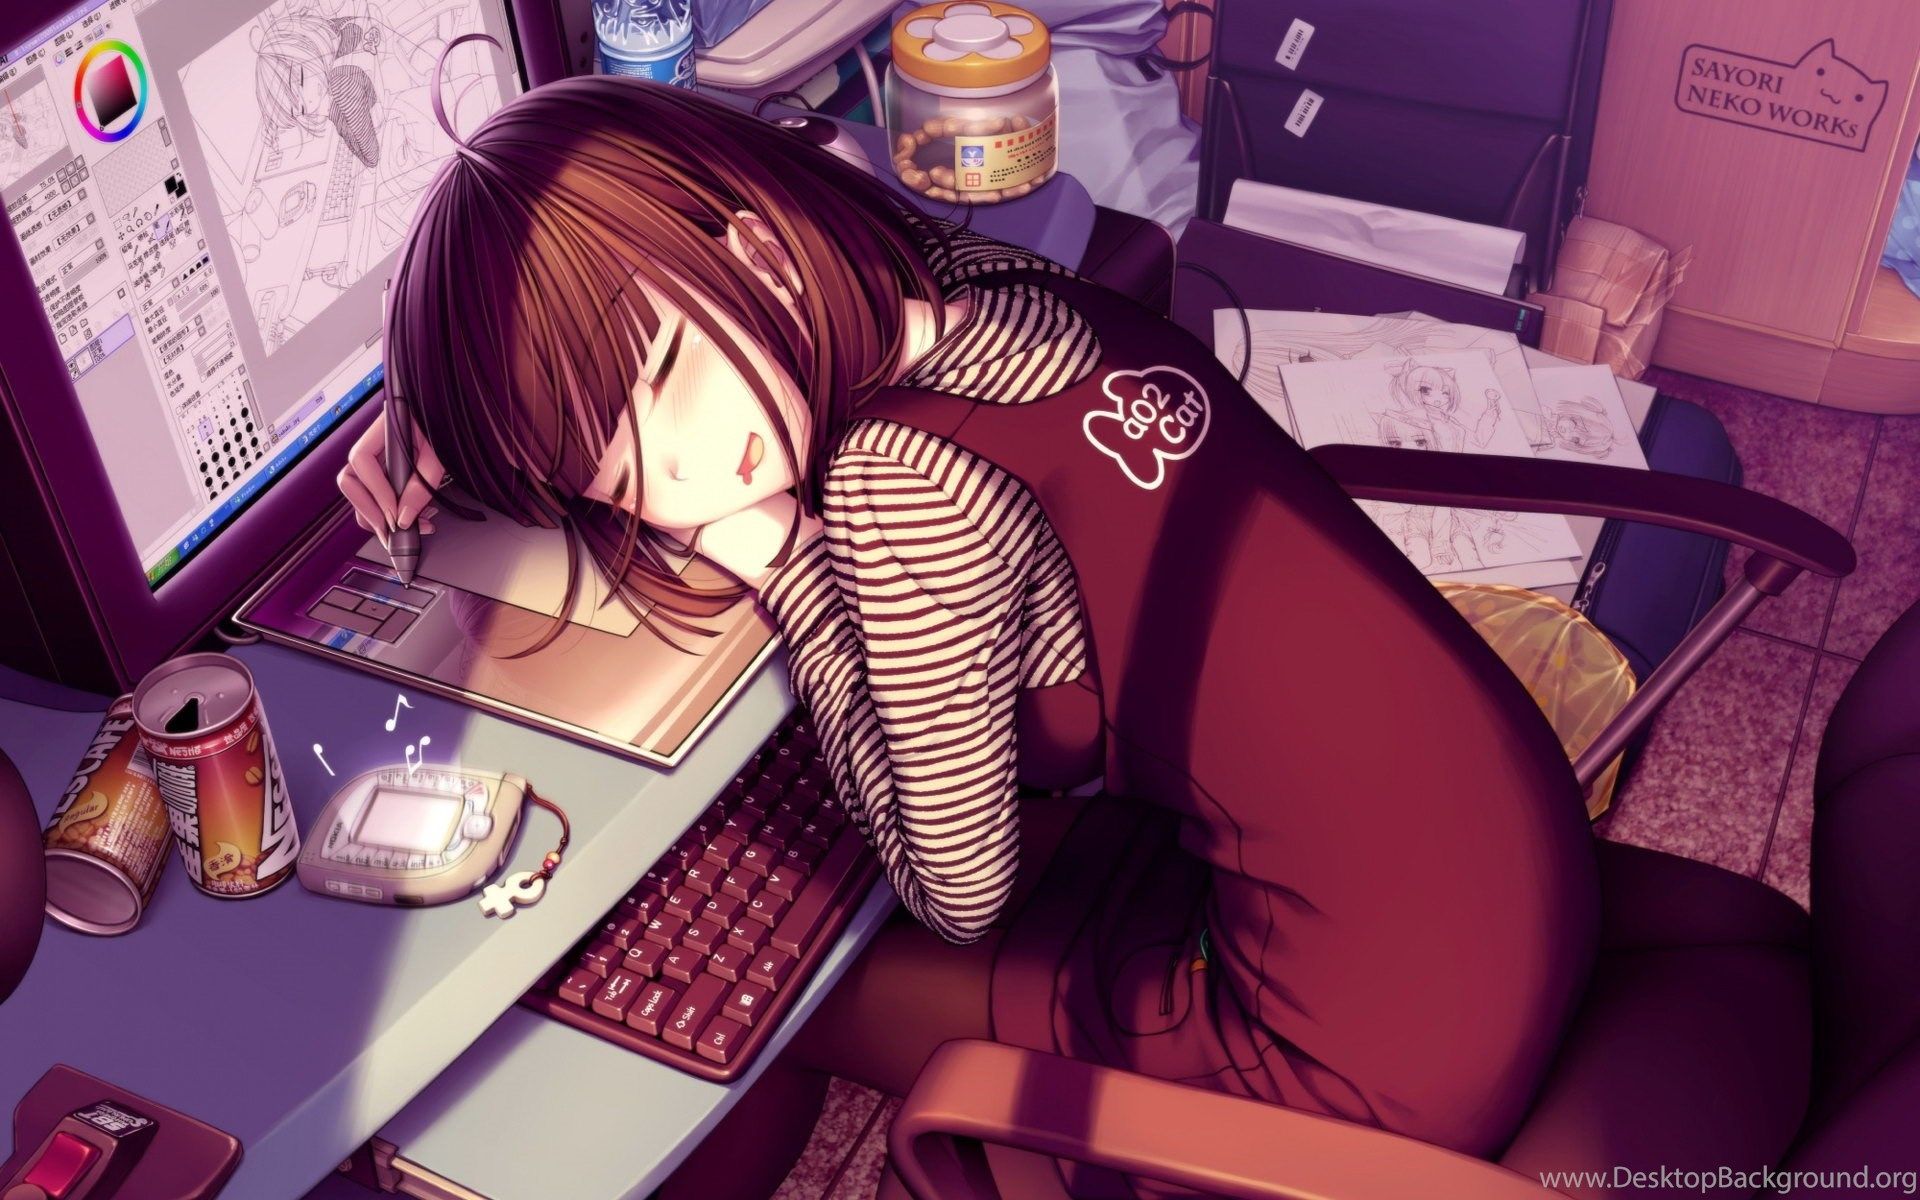 Cute Anime Girl Wallpaper Desktop .desktopbackground.org